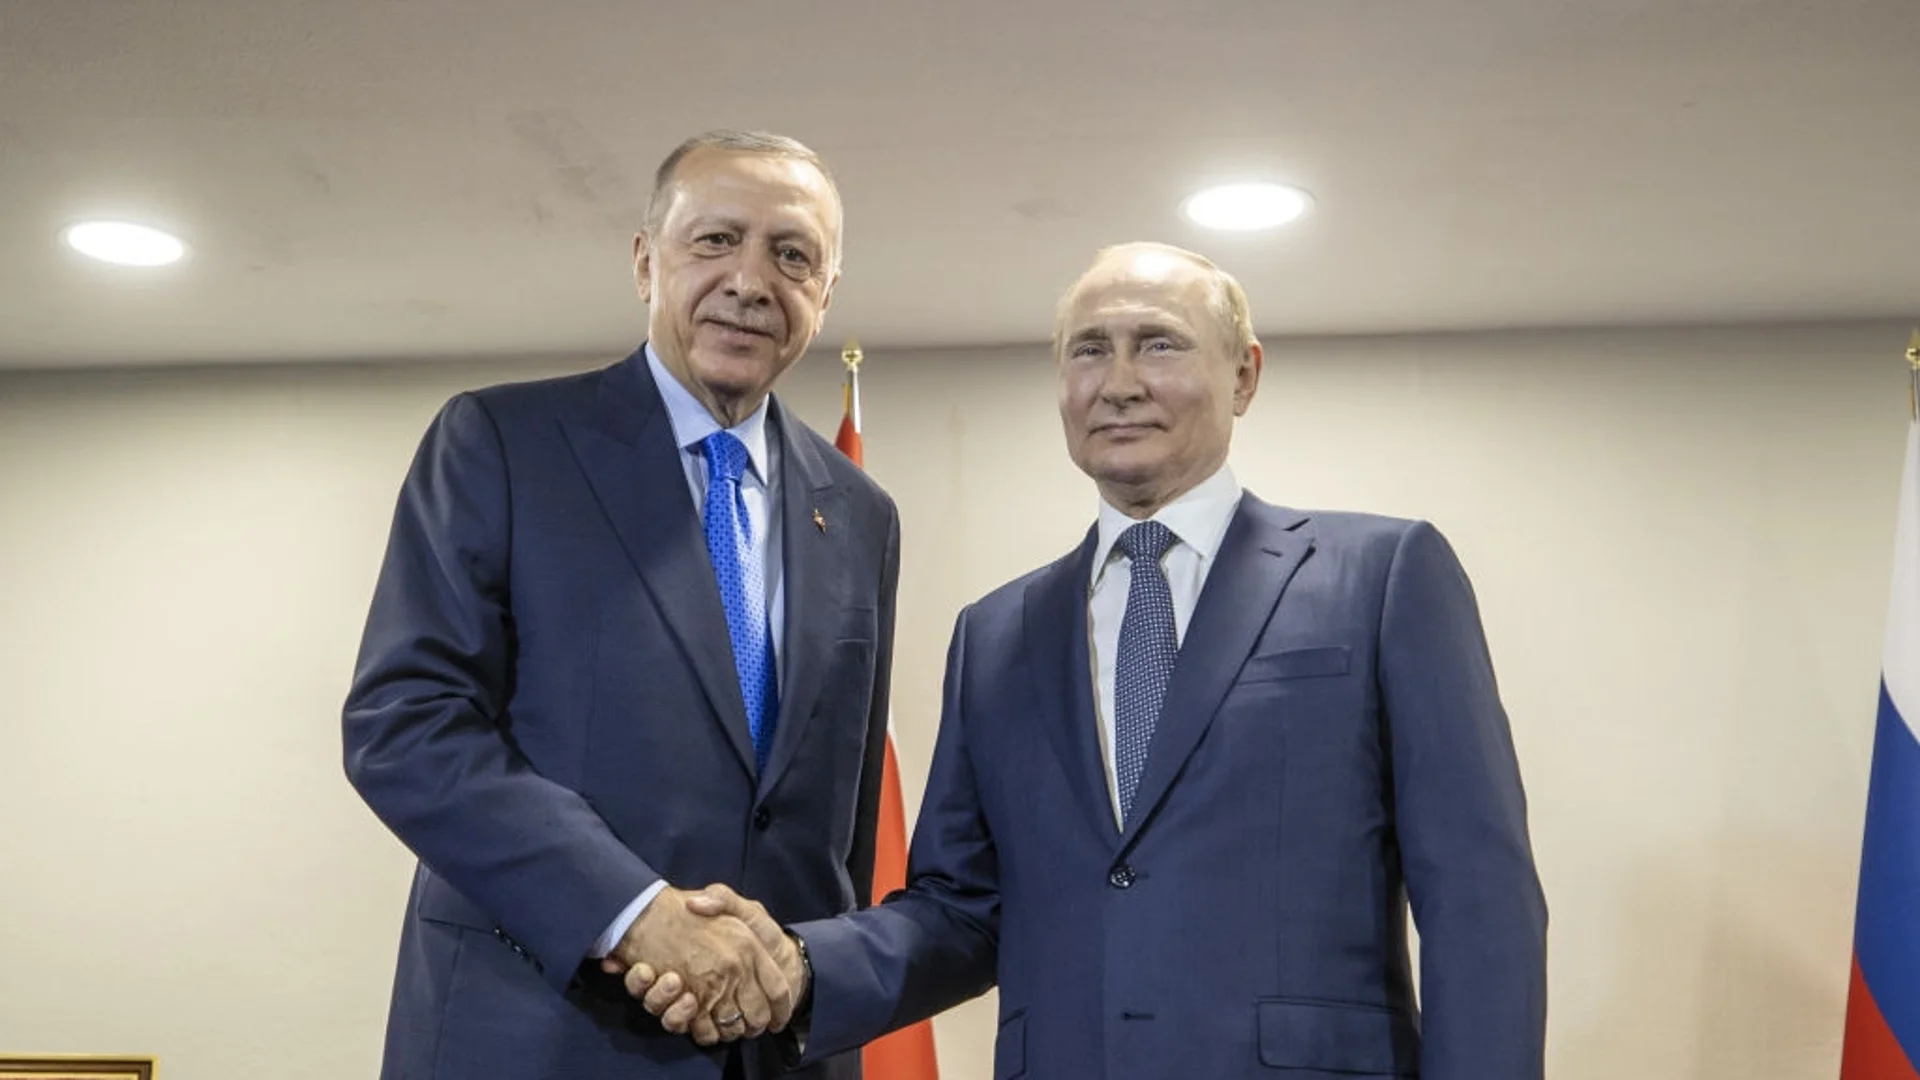 Вместо да се срещне с Путин, Ердоган отива в САЩ през май